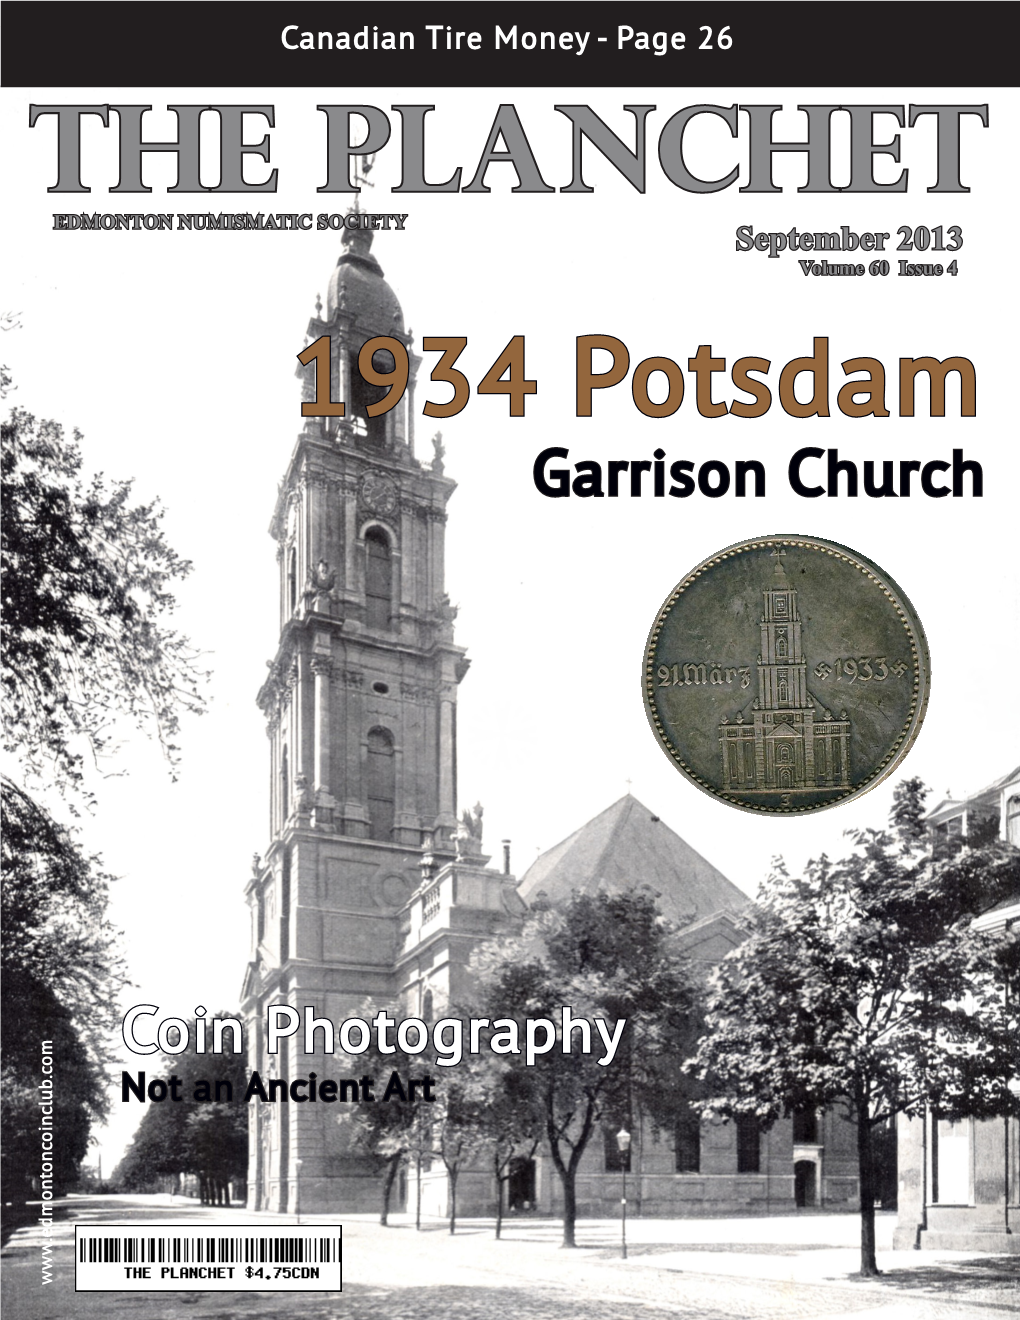 Garrison Church Coin Photography